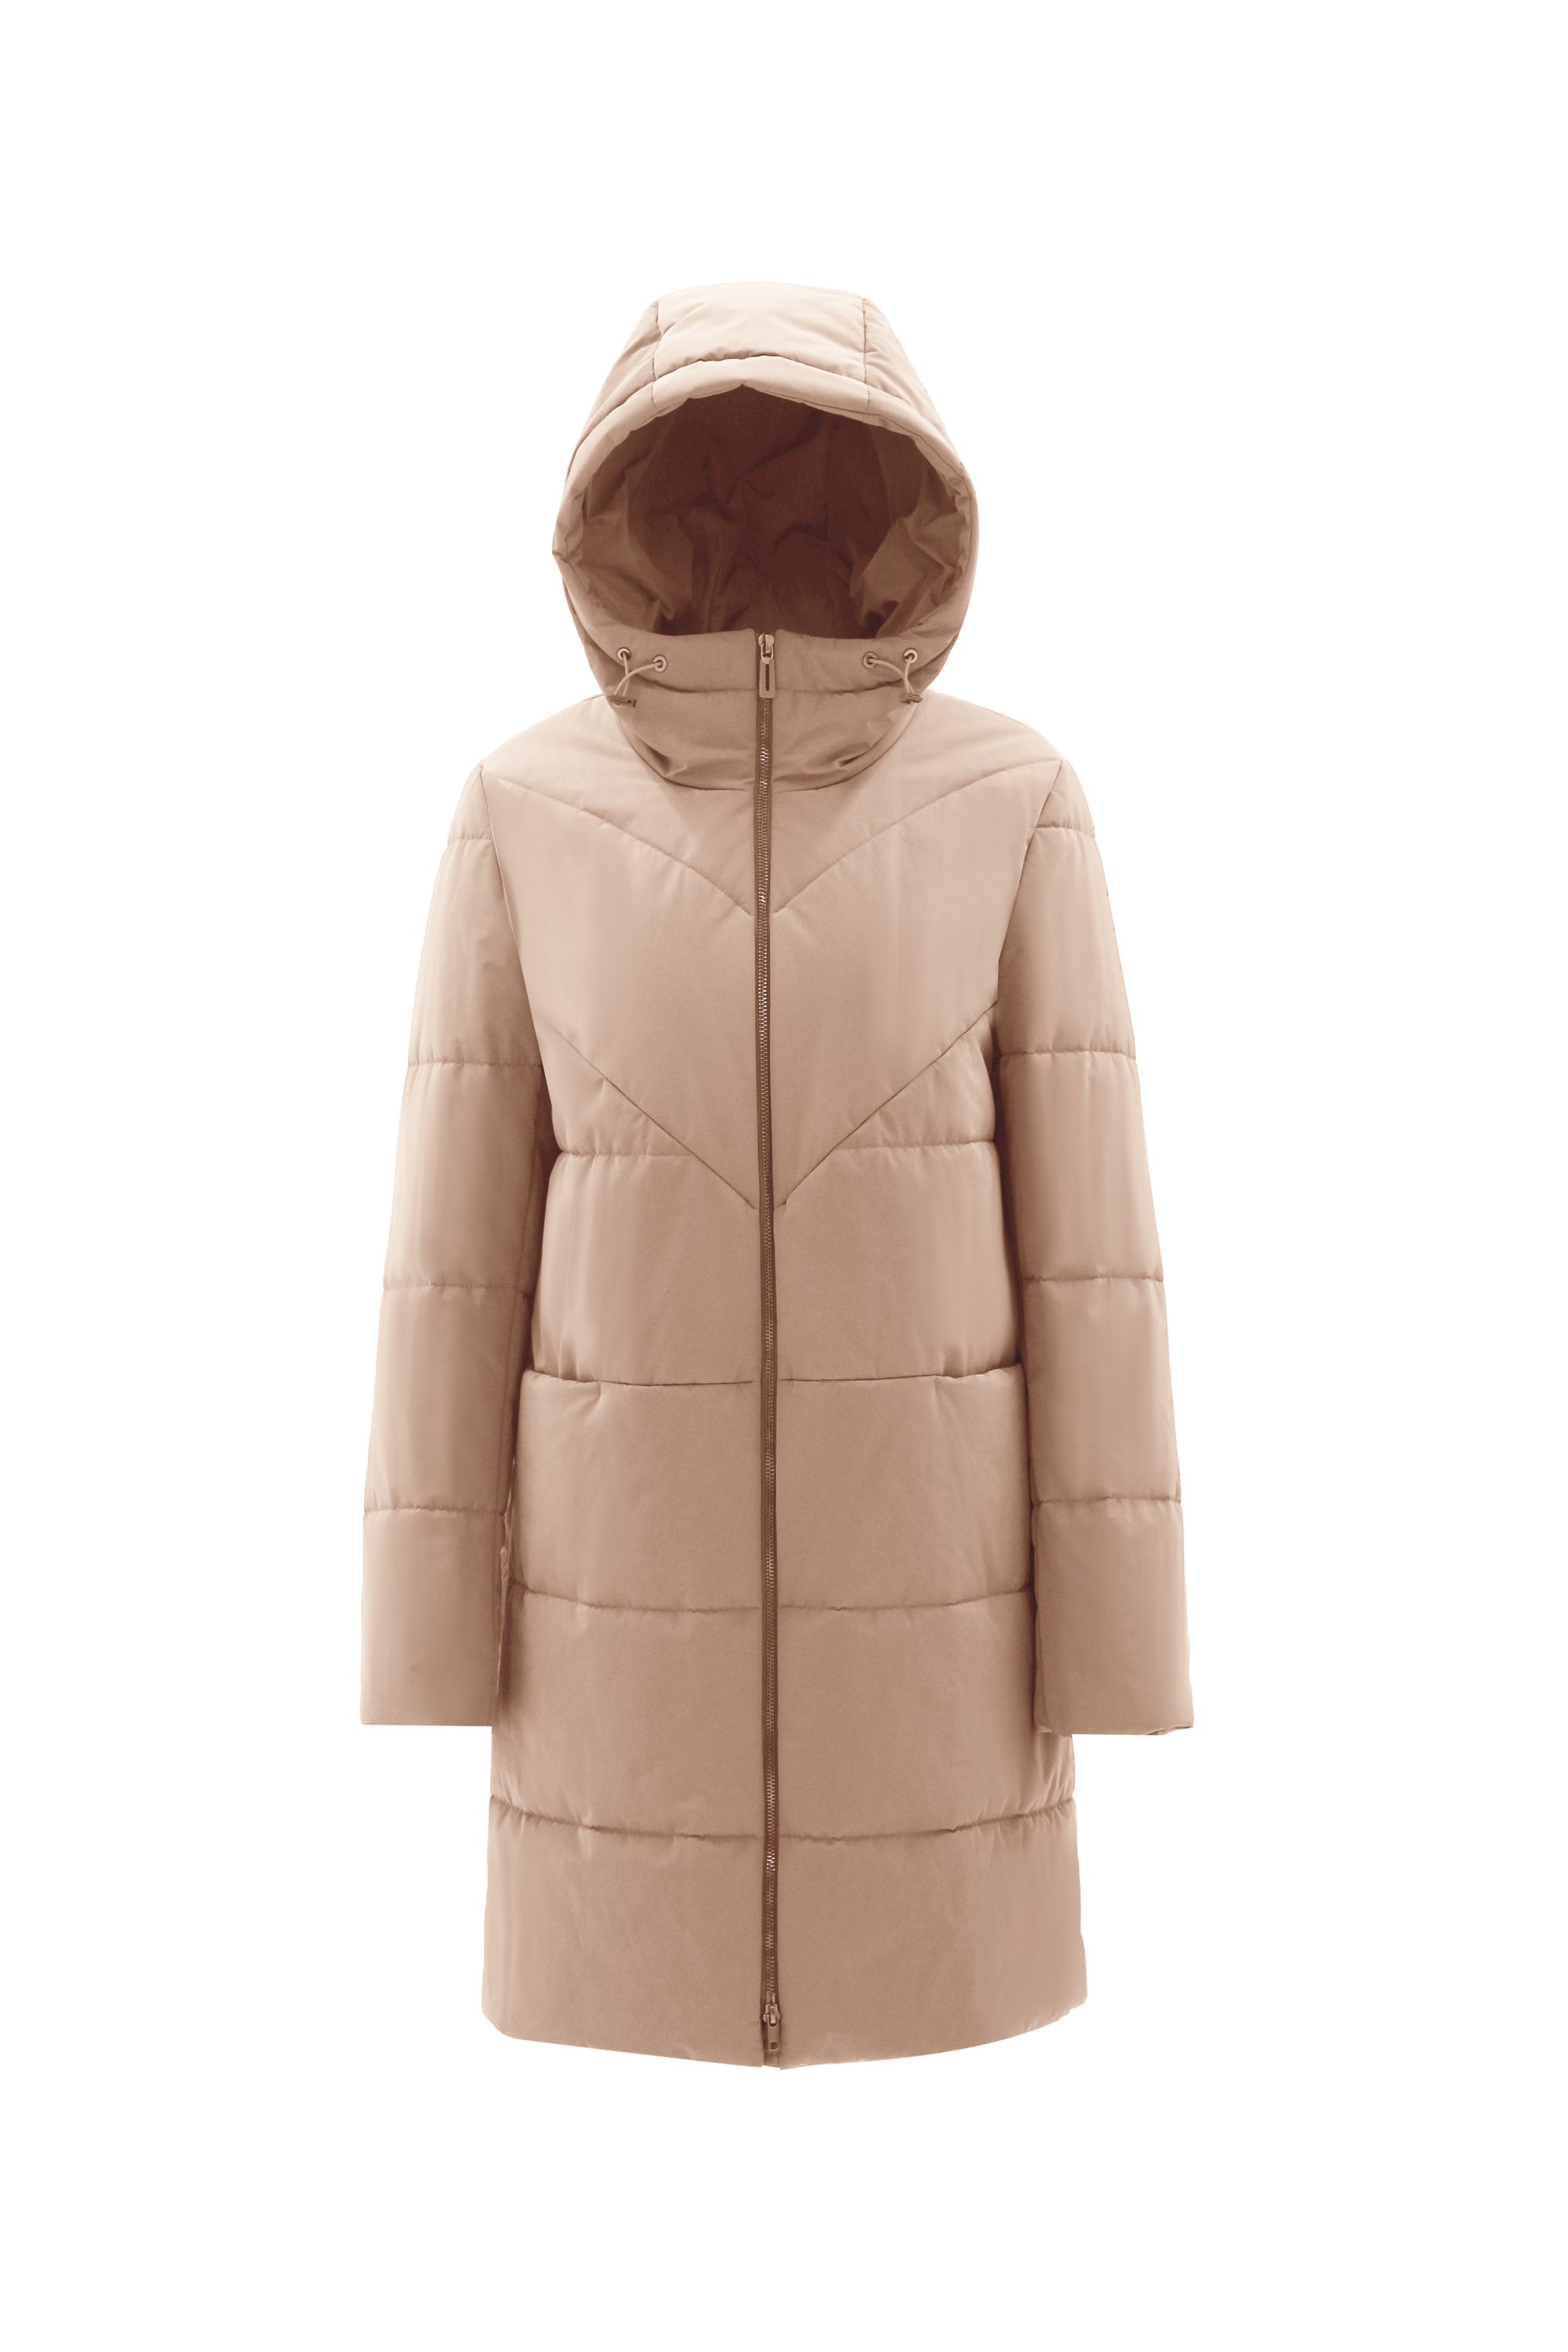 Пальто женское плащевое утепленное 5-12381-1. Фото 1.